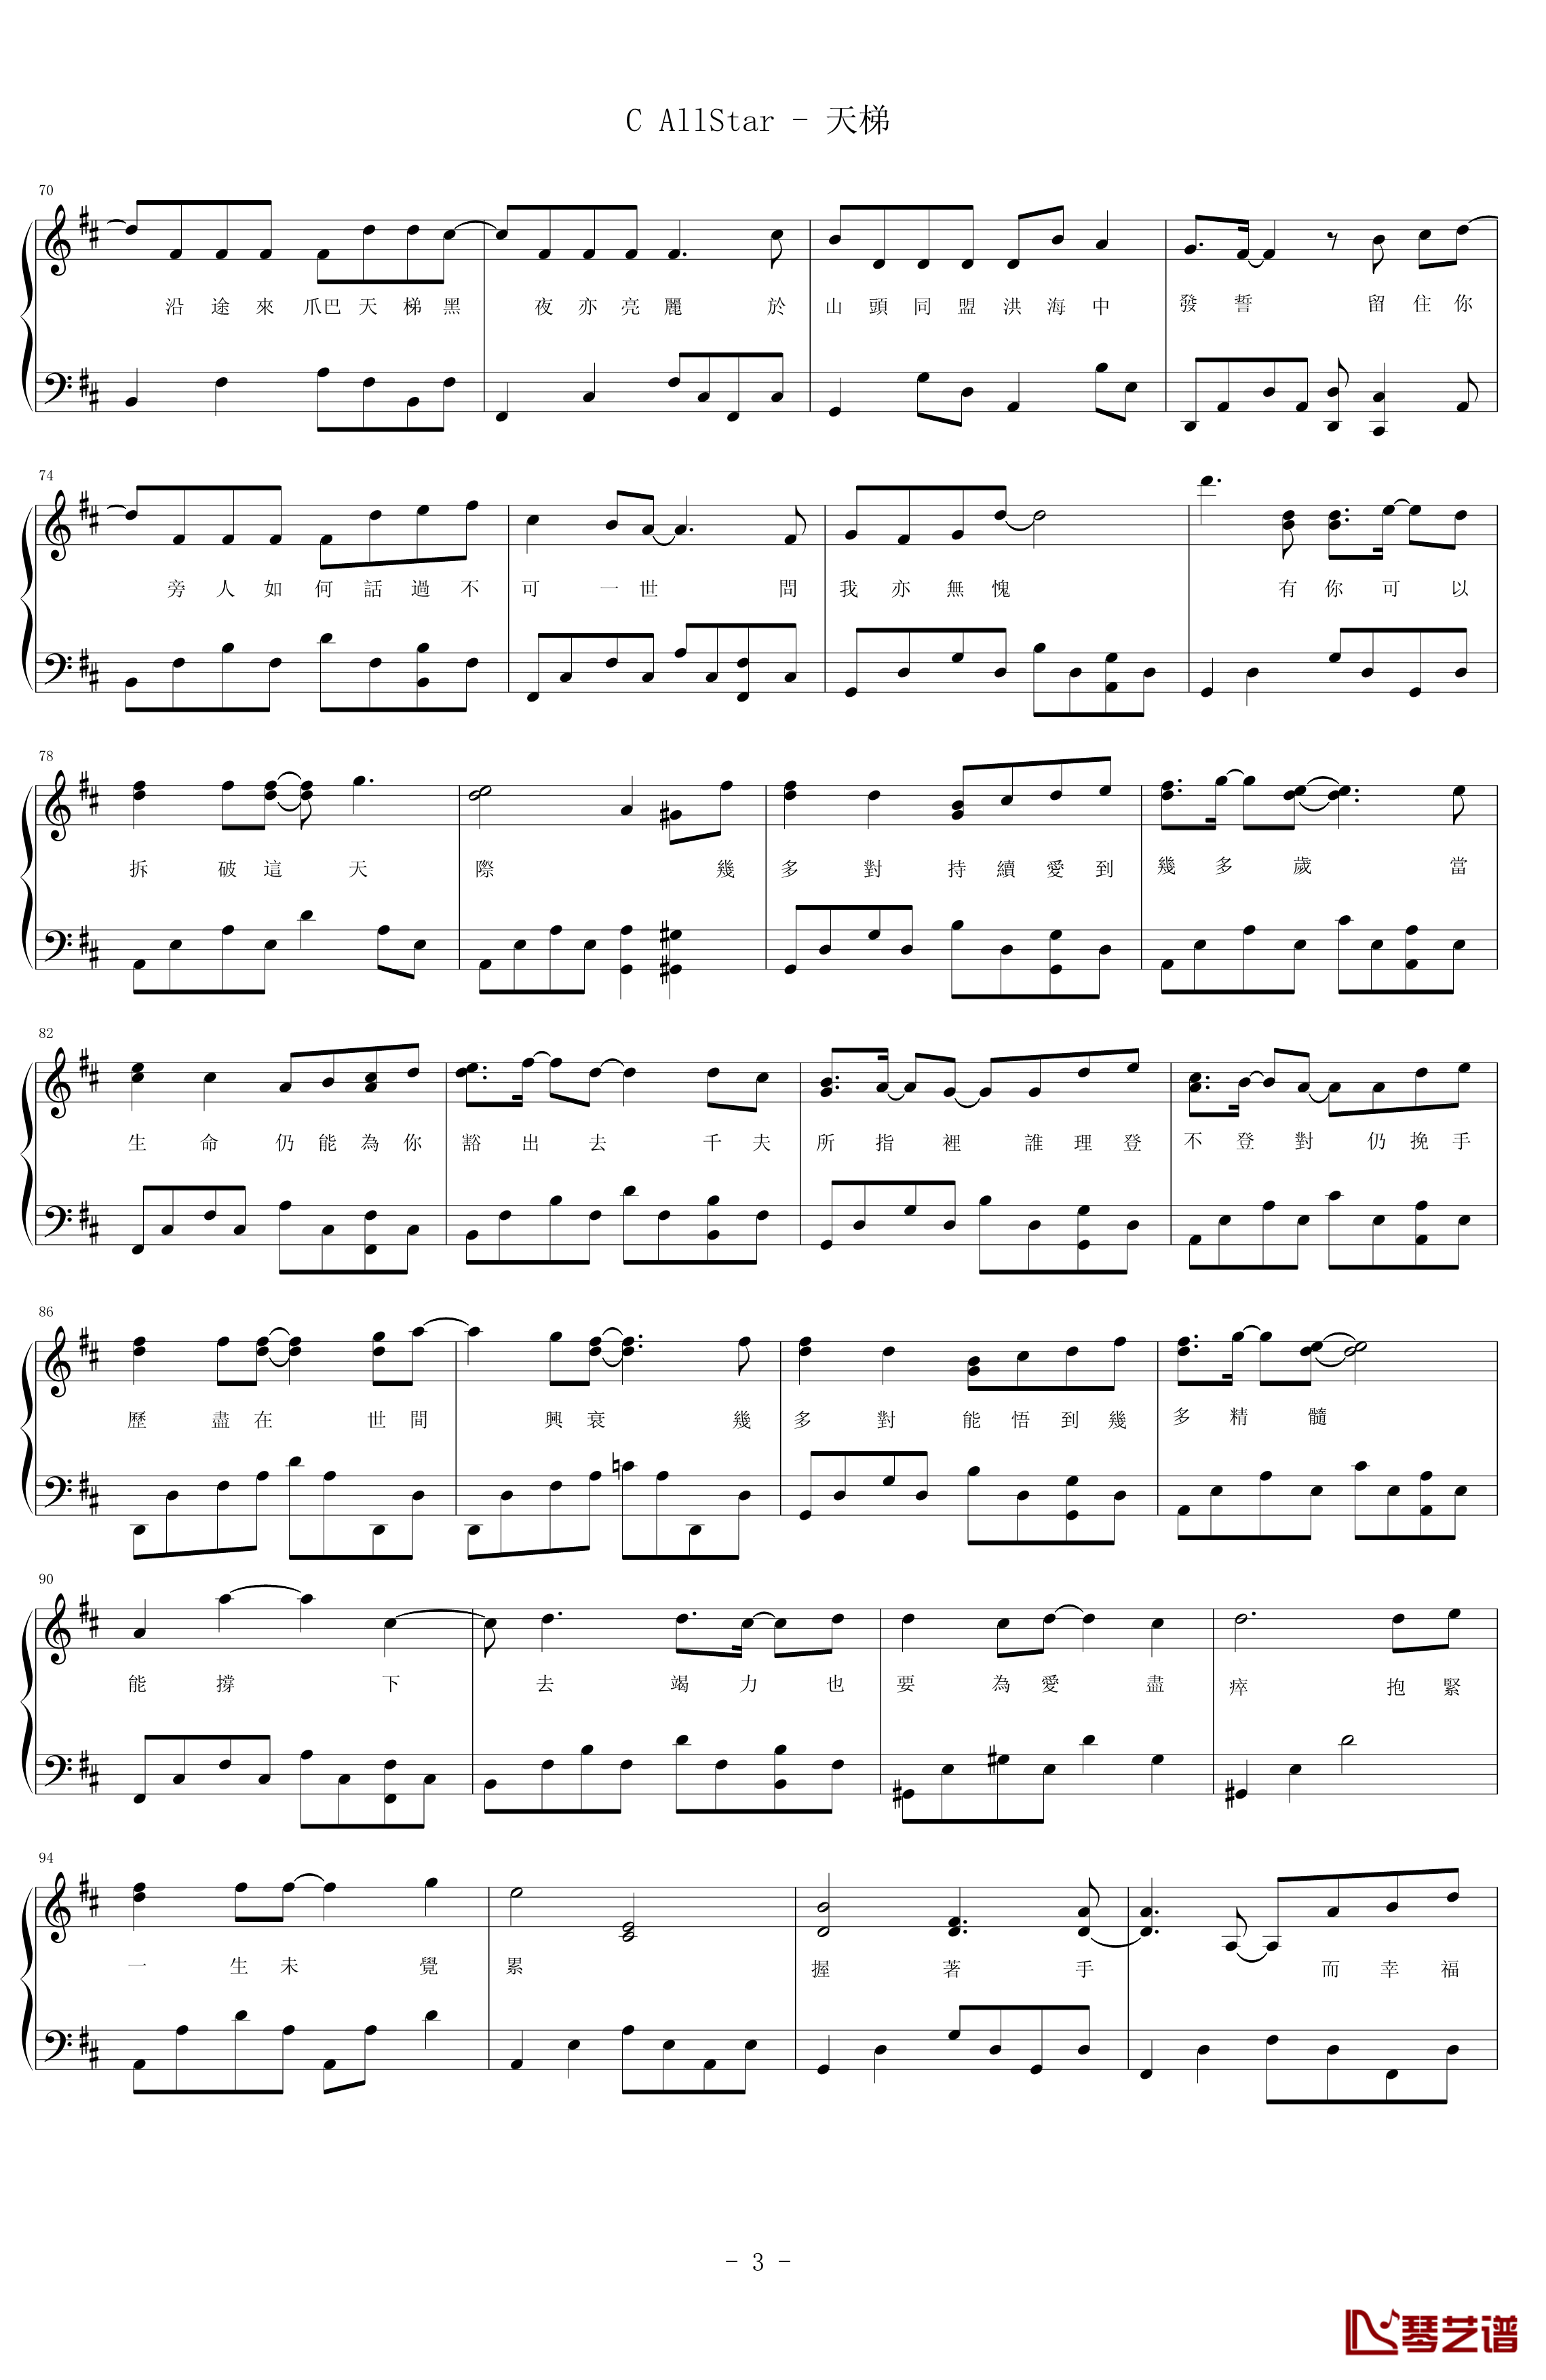 天梯钢琴谱-简易版-C AllStar3